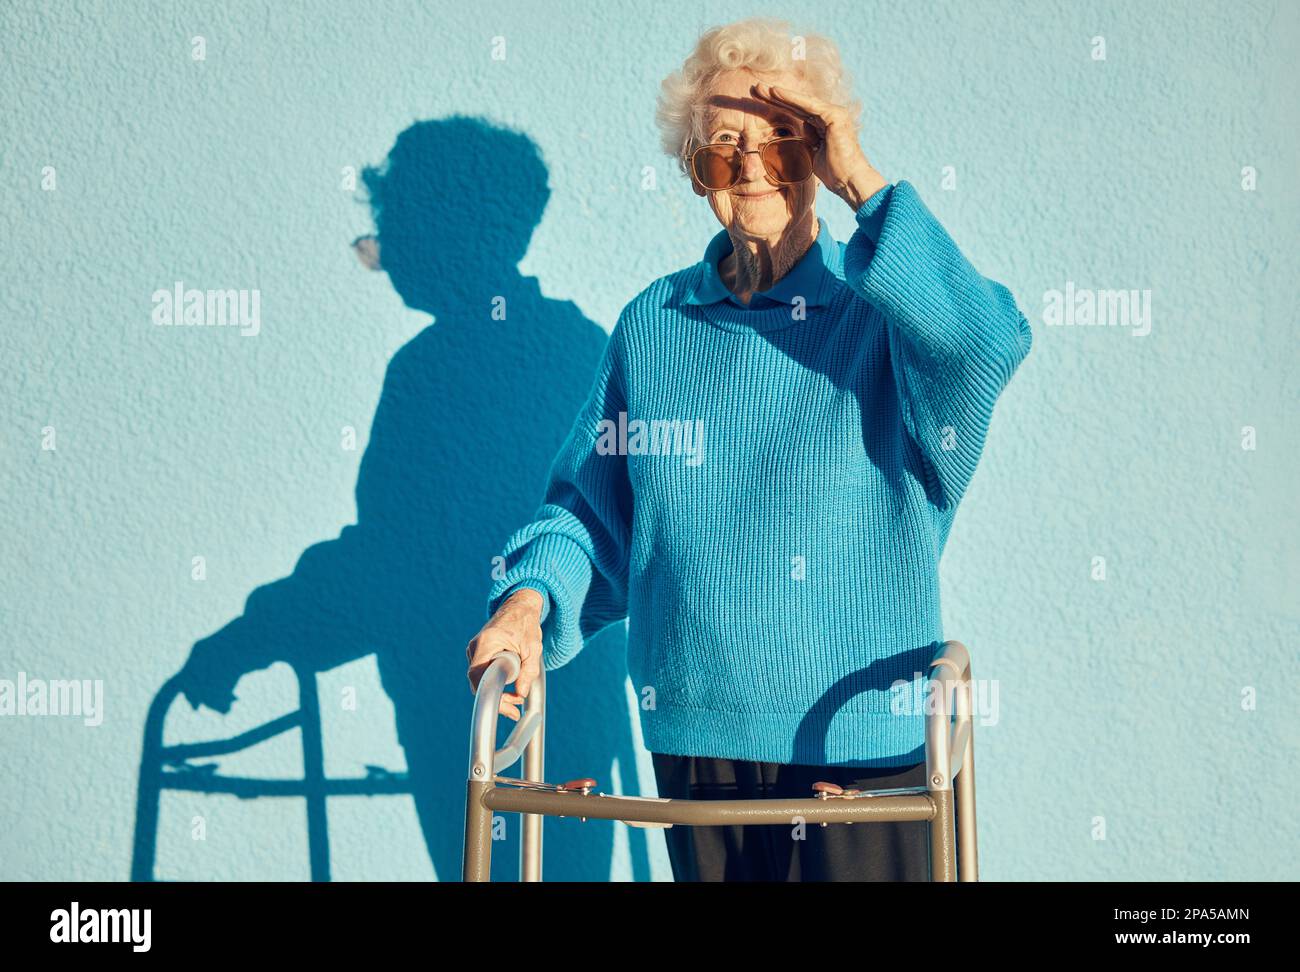 Porträt, Schatten und Behinderung mit einer älteren Frau auf blauem Wandhintergrund, während sie einen Gehwagen im Freien hält. Gesundheit, Handicap und Mode Stockfoto